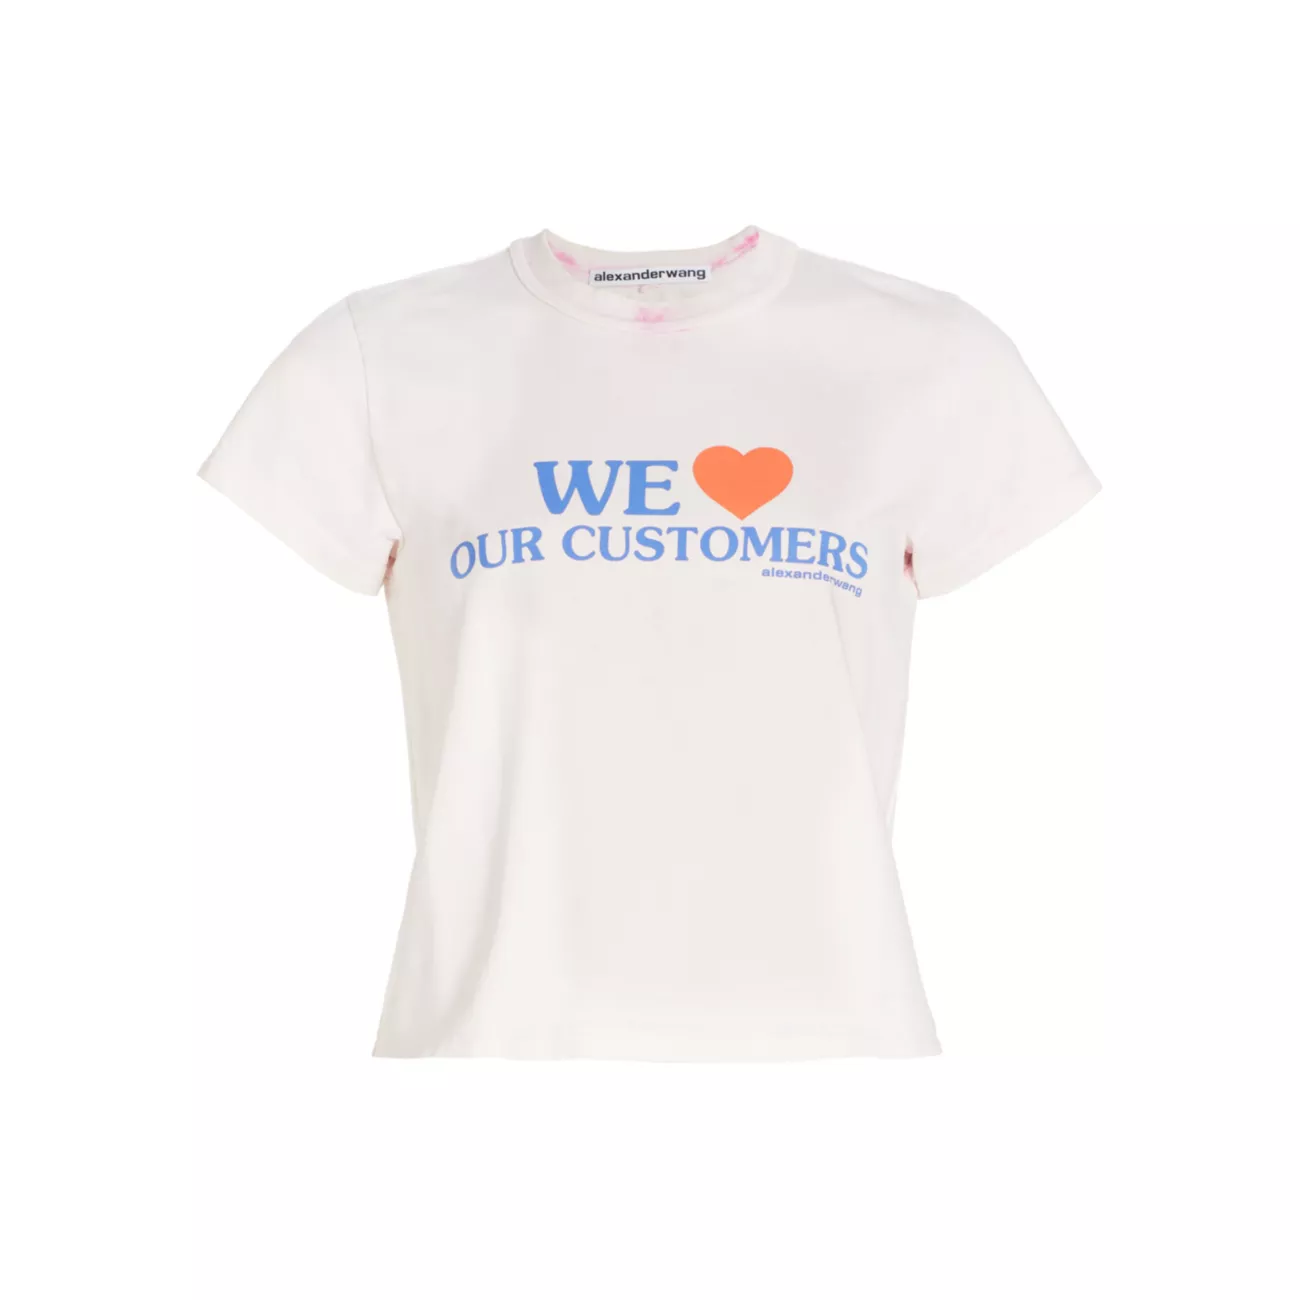 We Love Our Customers Shrunken T-Shirt Alexander Wang